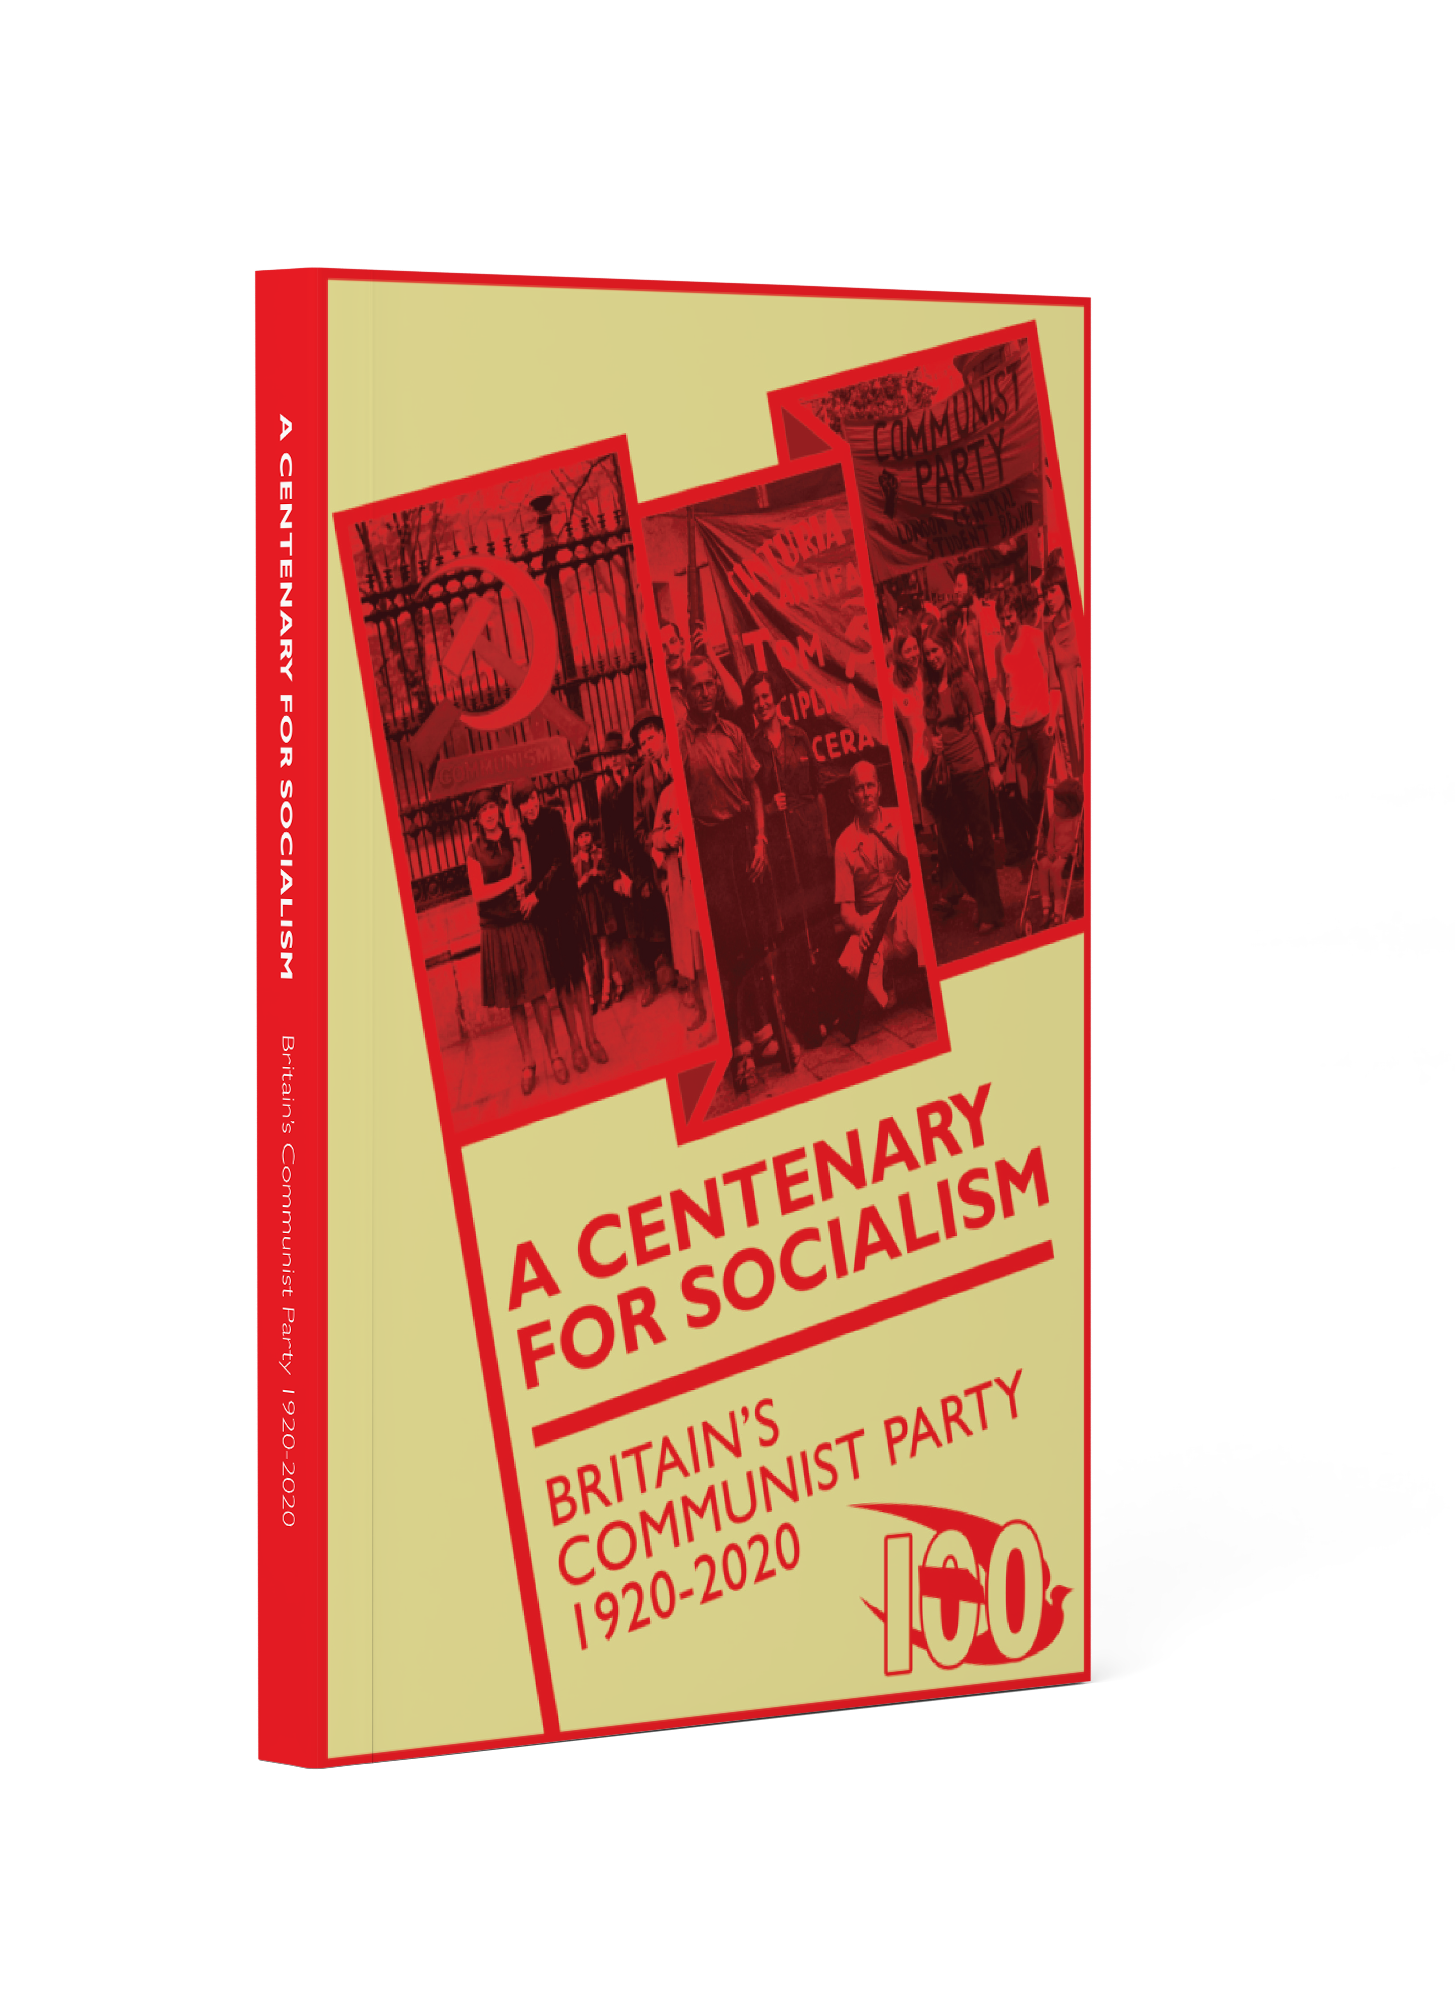 A Centenary for Socialism